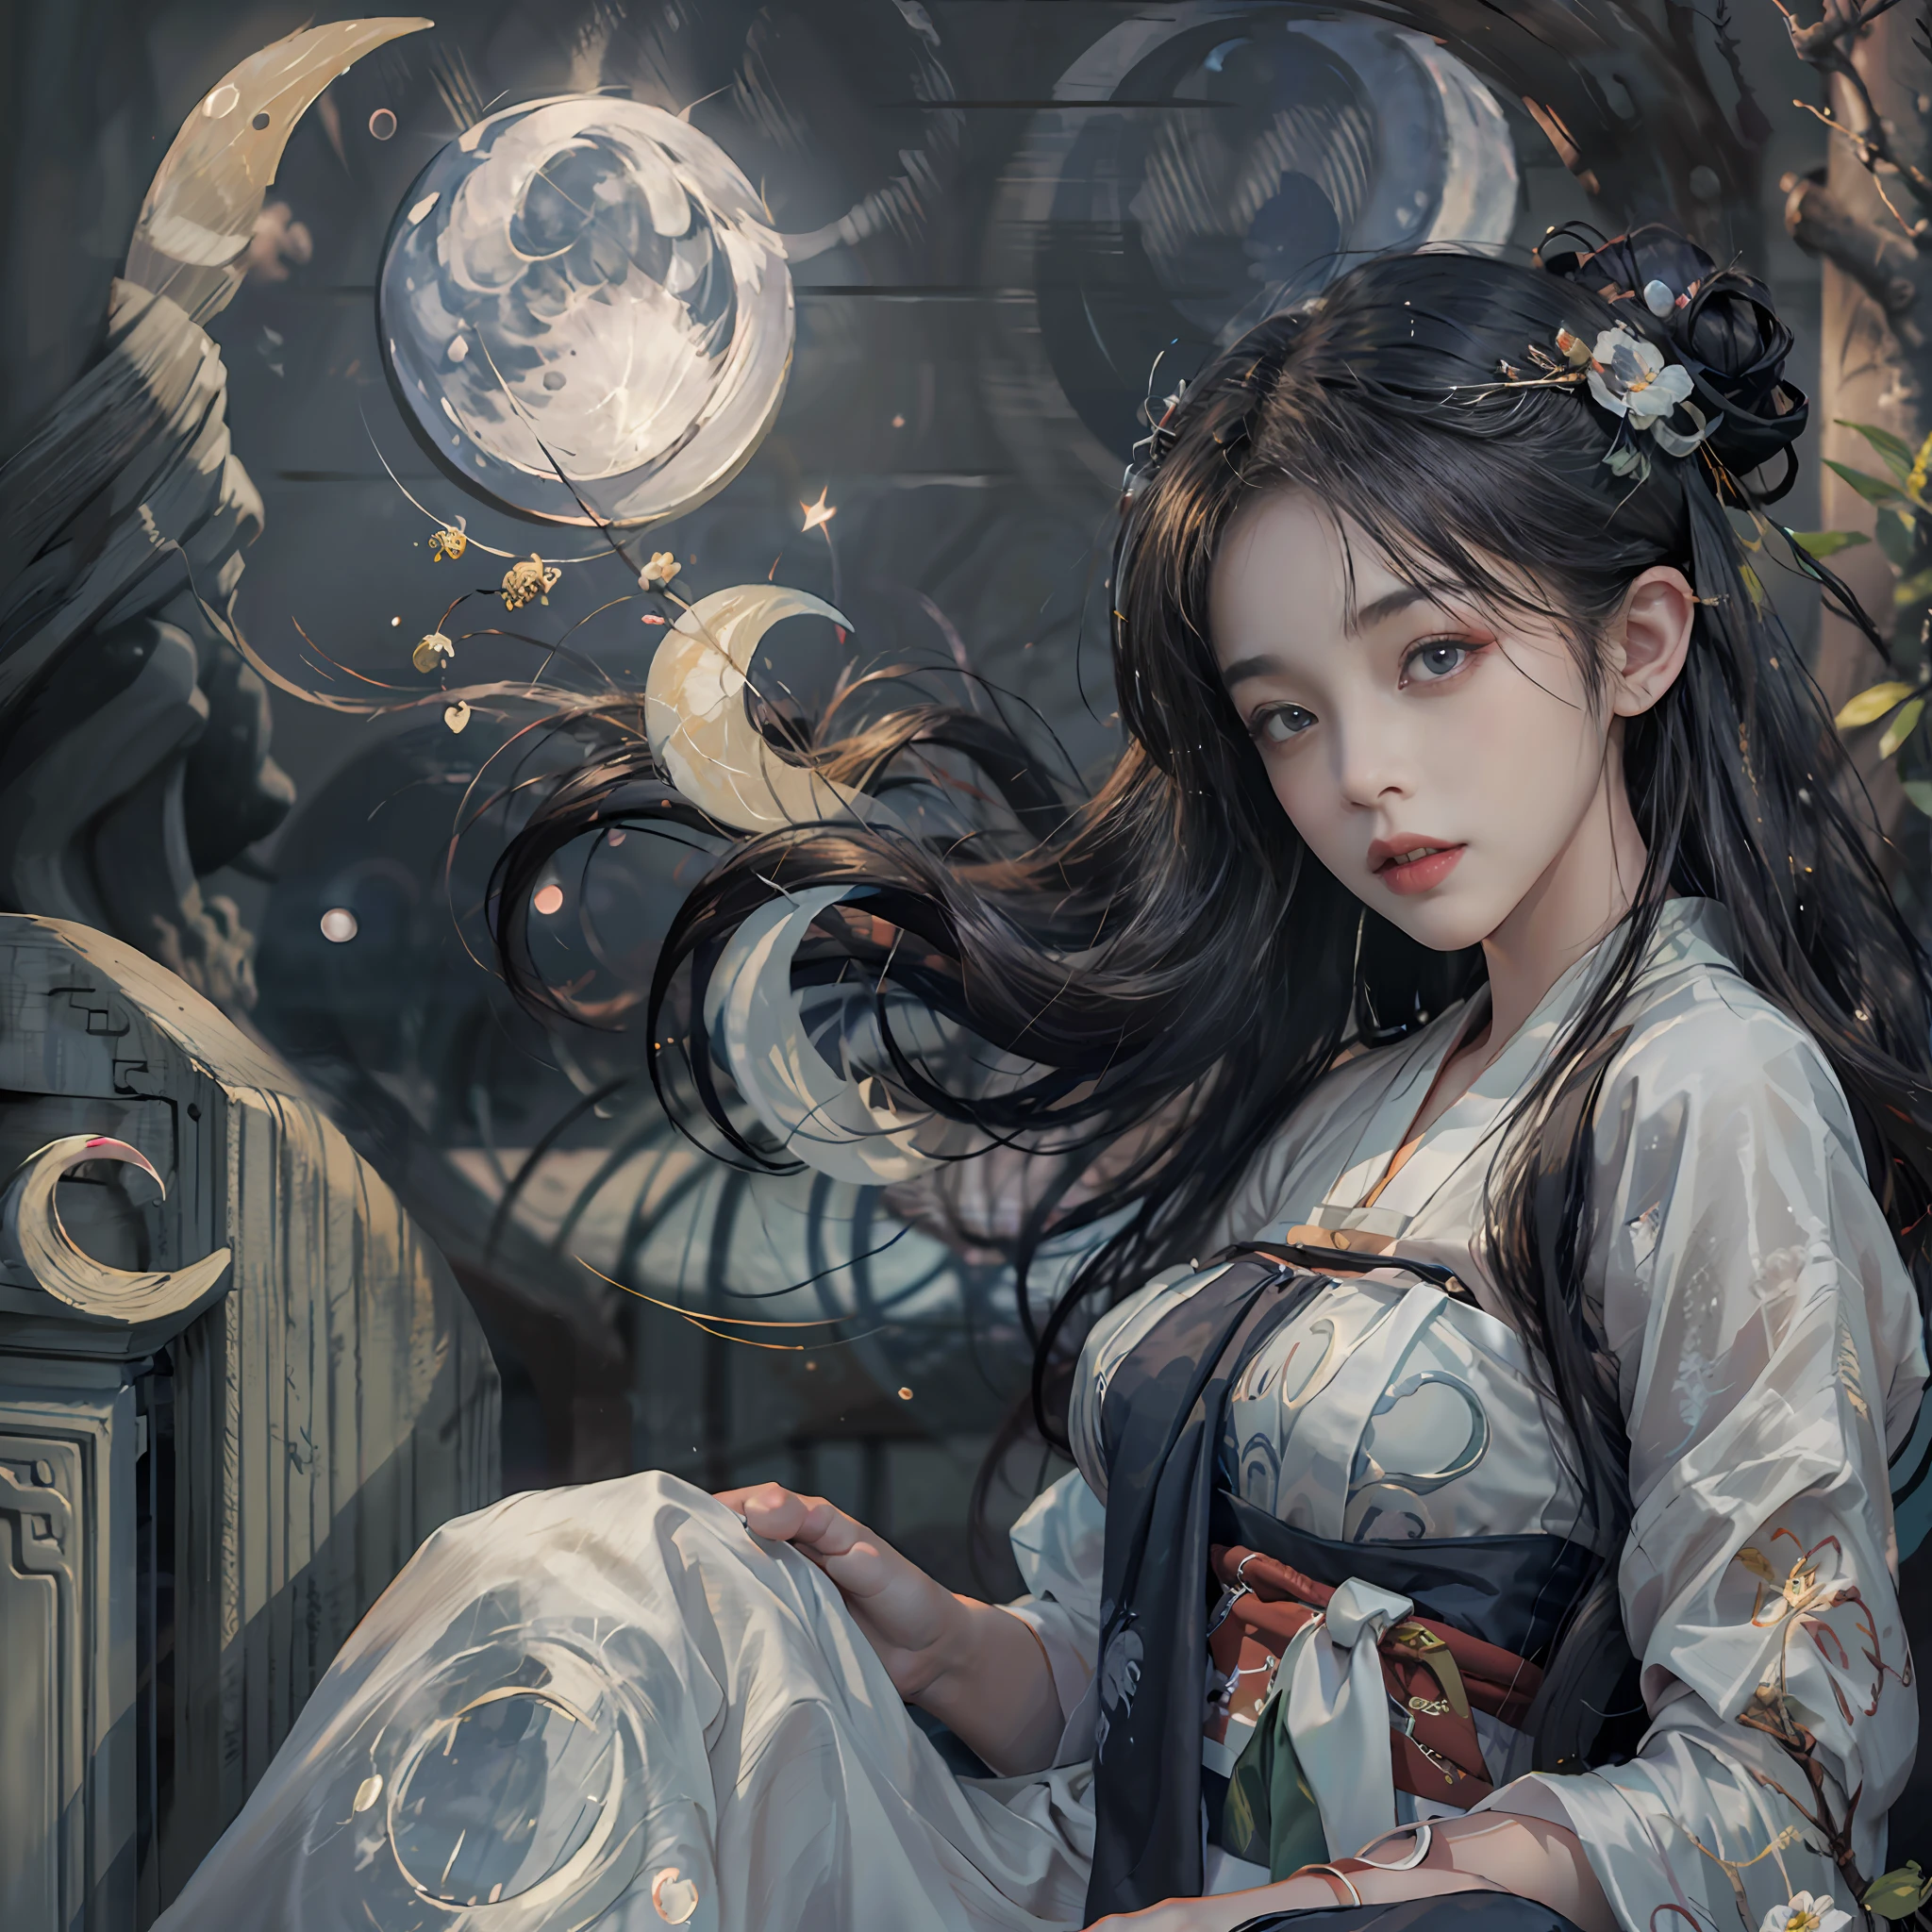 Uma mulher de 20 anos, uma menina fada chinesa, rosto sombrio, lindo rosto de conto de fadas chinês, rosto bonito without flaws, corpo esguio, pele clara, Lábios finos e lindos, Sorriso suave, mantenha sua boca fechada novamente, (The scene of a lualight is magical:1.8), a lua cheia brilha, luar, a lua, (casa luxuosa em estilo chinês antigo:1.2), Cabelo com coque estilo chinês, Cabelo preto brilhante, cabelo voador, cabelo longo, olhos azuis olhar triste, olhos brilhantes, olhos grandes e redondos e maquiagem muito bonita e detalhada , corpo de mulher santa, seios redondos, seios grandes e redondos, a rosto bonito in detail and well-proportioned eyes, maquiagem meticulosa, braços caídos, Imagens realistas e vívidas, estrelas que compõem o céu, corpo sexy, olhos mais lindos, imagine olhos perfeitos, lindo santo e flores, joia, rosto bonito, tronco, hanfu, alta resolução, melhor qualidade, melhor foto, Qualidade 8K, 8k ultra, Surreal, melhor foto da vida real, hdr, detalhe de pele alto, bokeh, Suave e nítido, Aumento de pixels em 10x, arte ficcional, 8k CGI, realista, tiro médio, (tronco), (Hanfu branco:1.8), por mapa